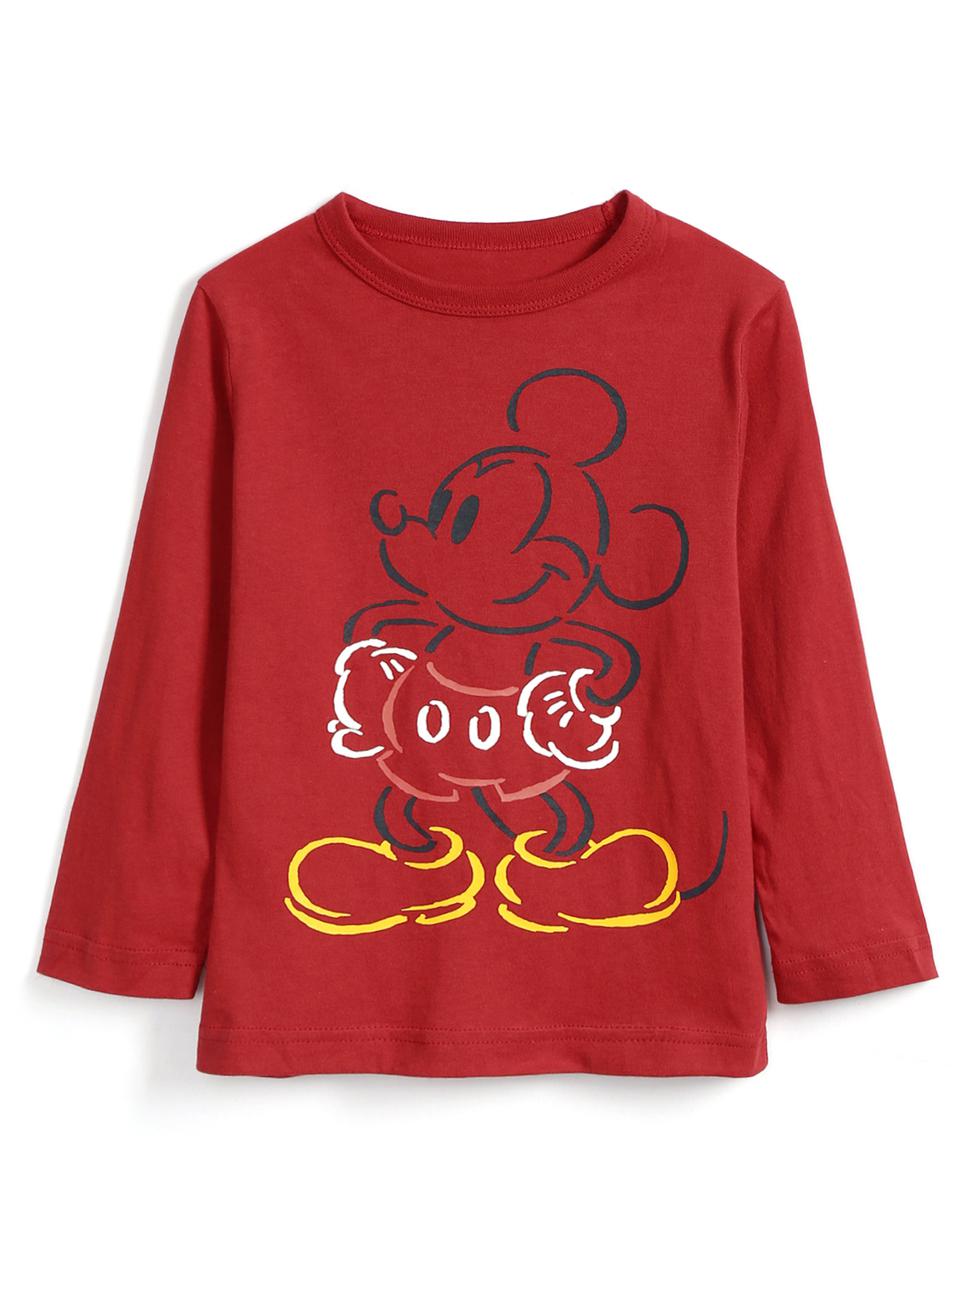 男幼童裝|Gap x Disney迪士尼聯名 米奇長袖T恤-摩登紅